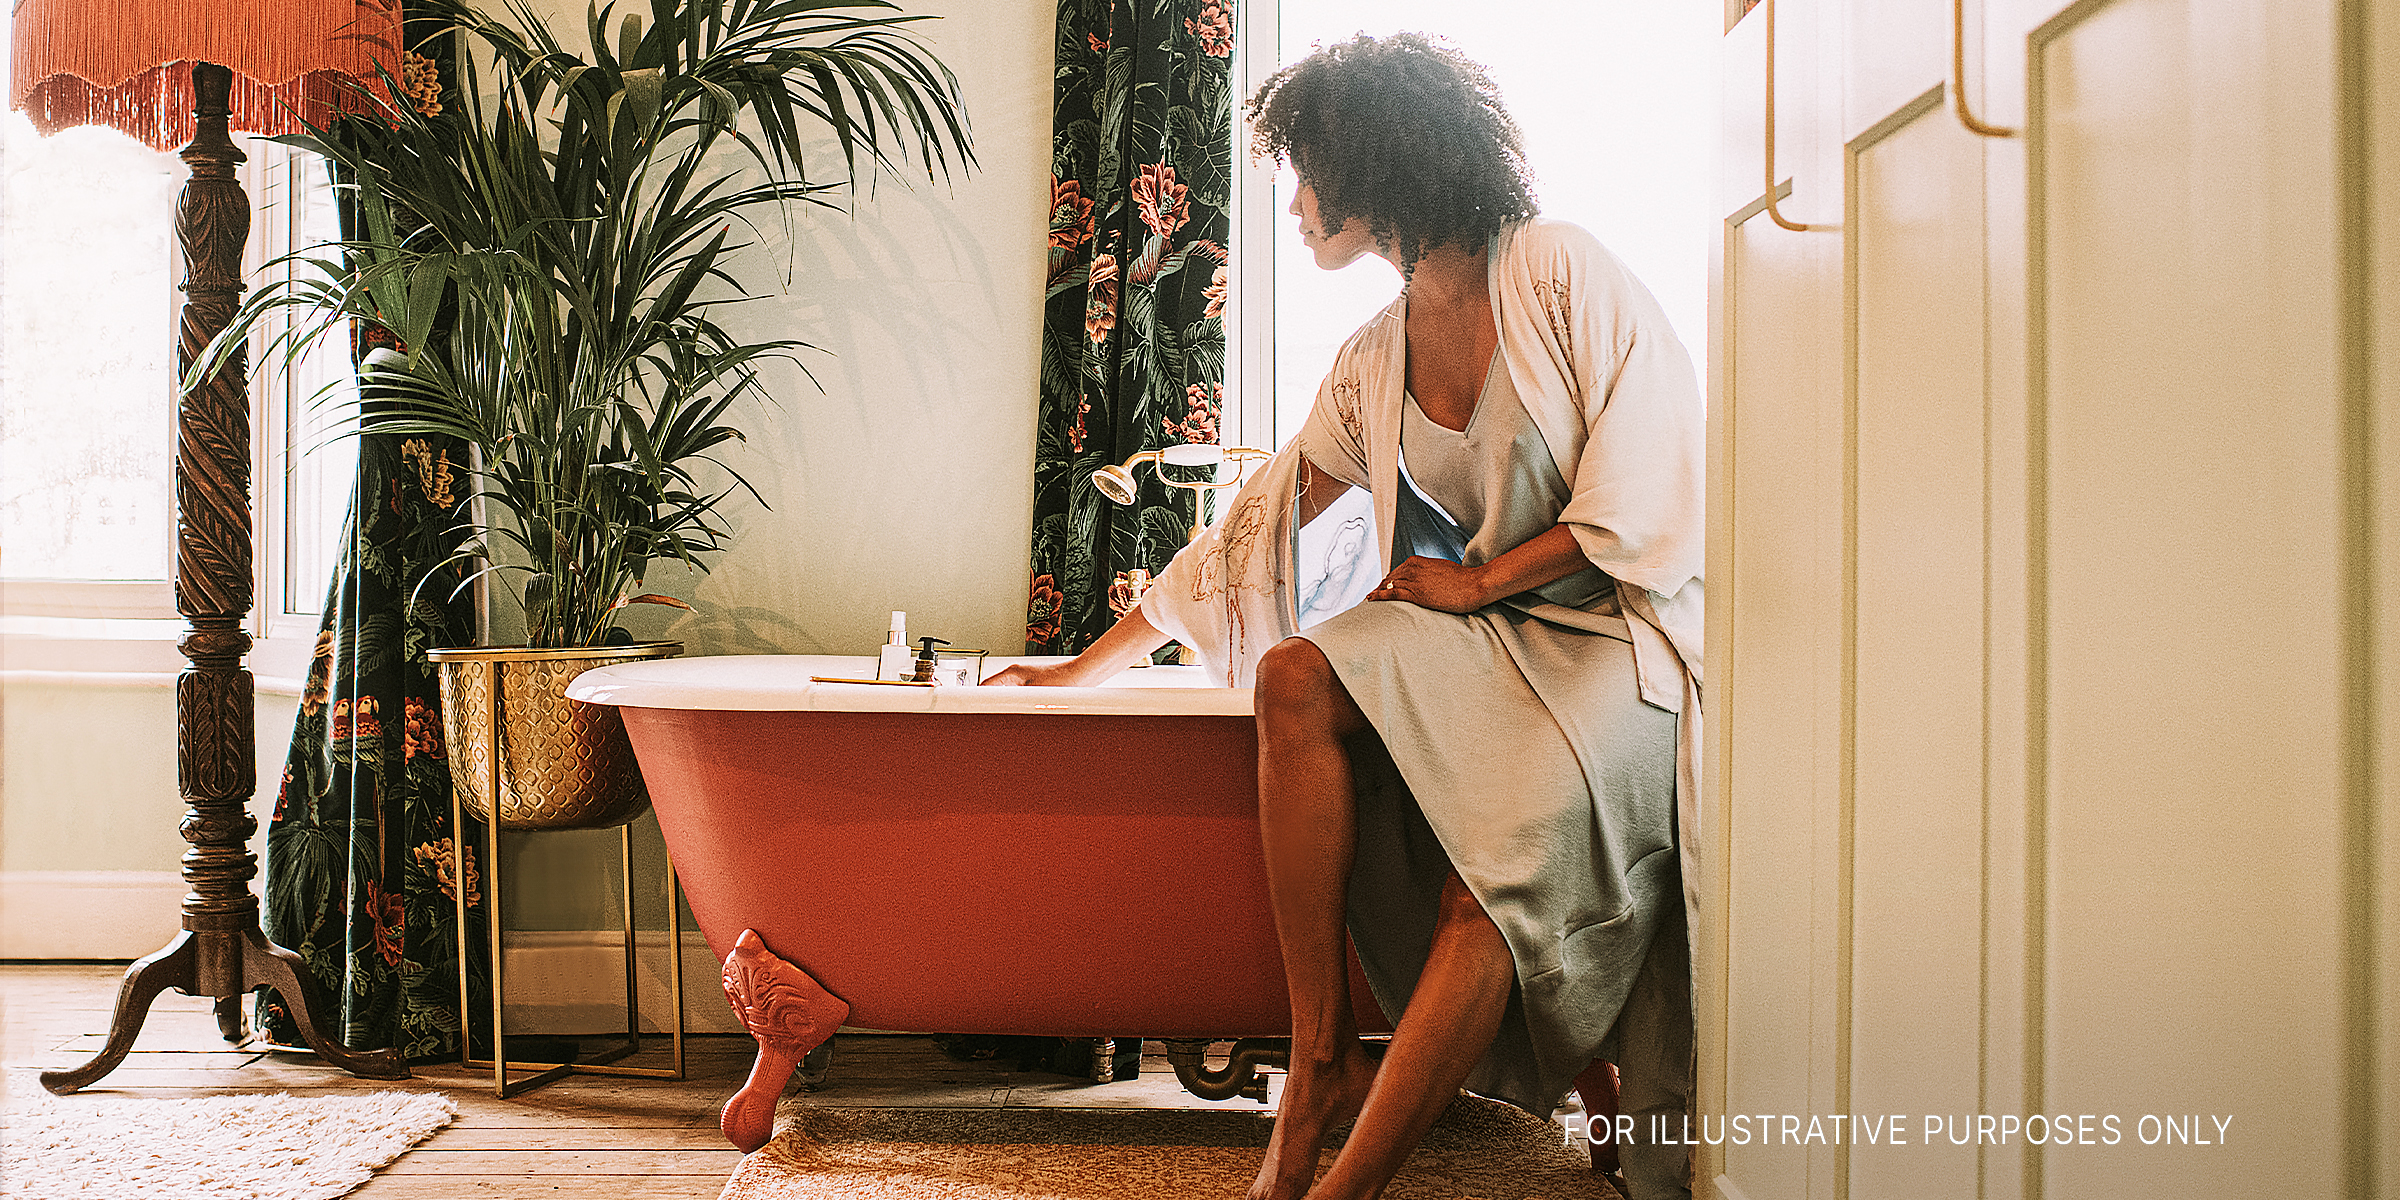 Mujer en una bañera | Foto: Getty Images